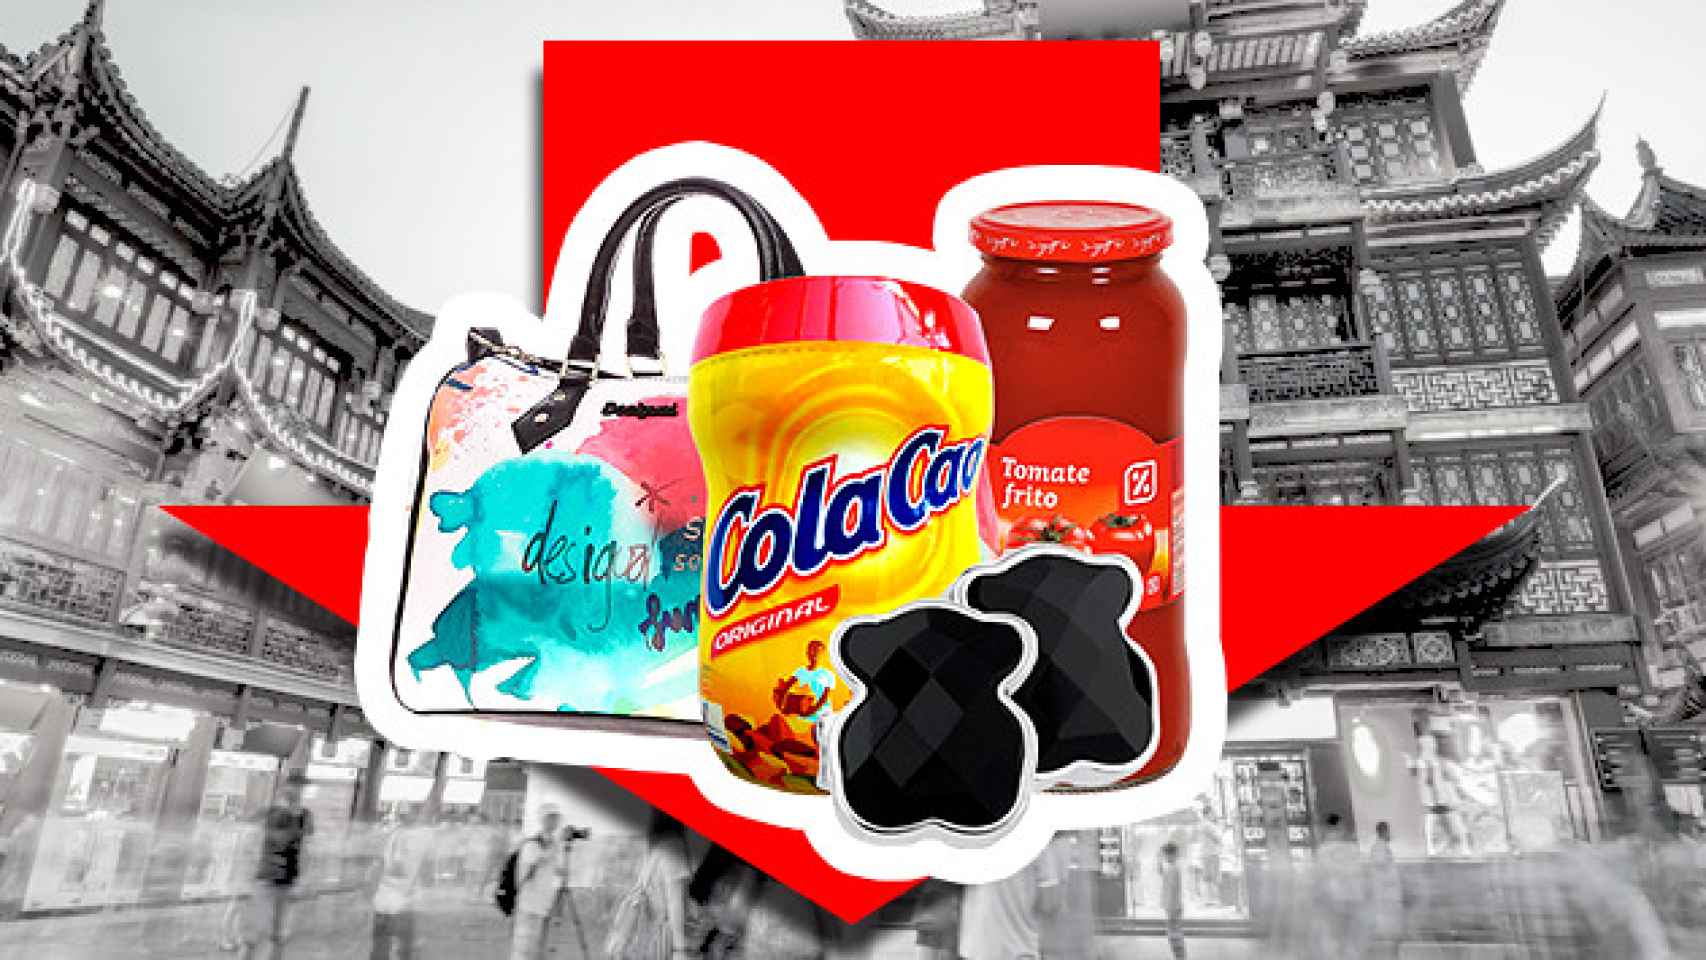 Productos de las marcas Cola Cao, Día, Desigual y Tous / CG